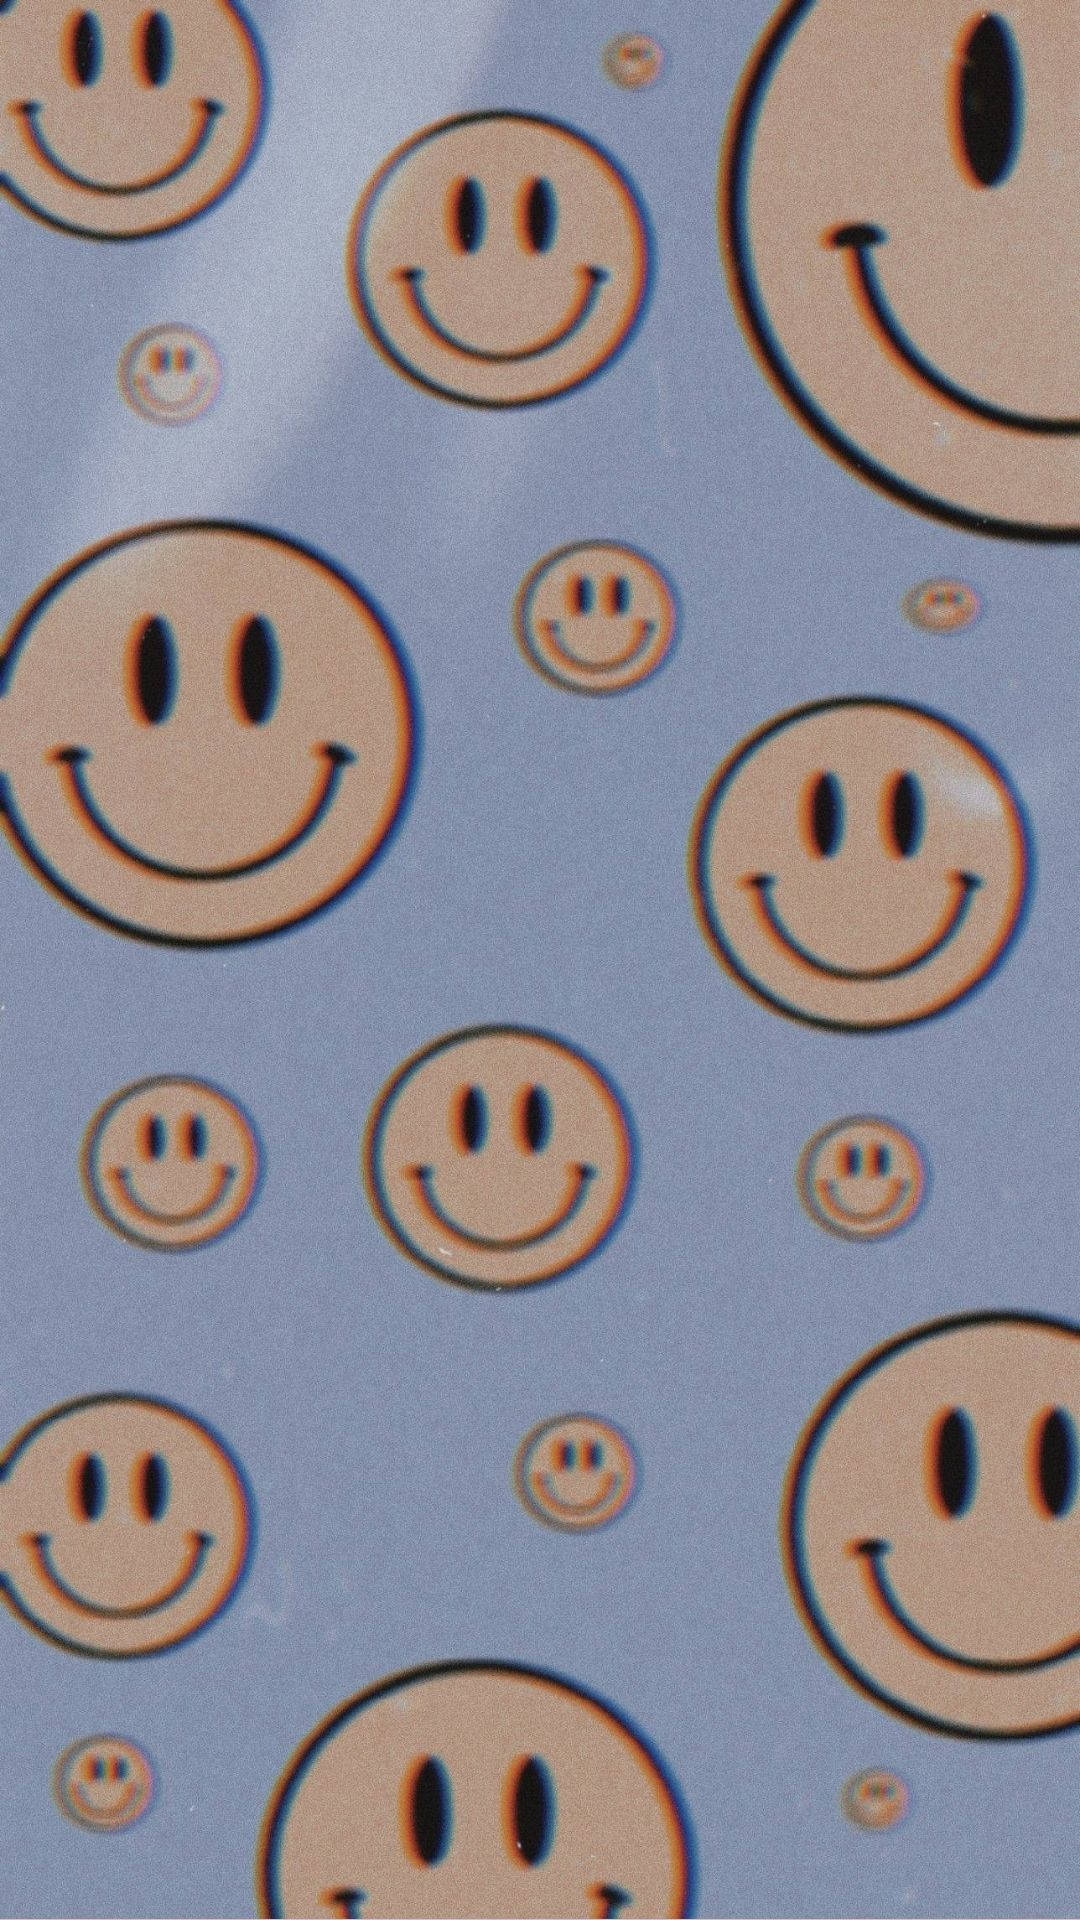 Smiling Aesthetic Bliss Wallpaper